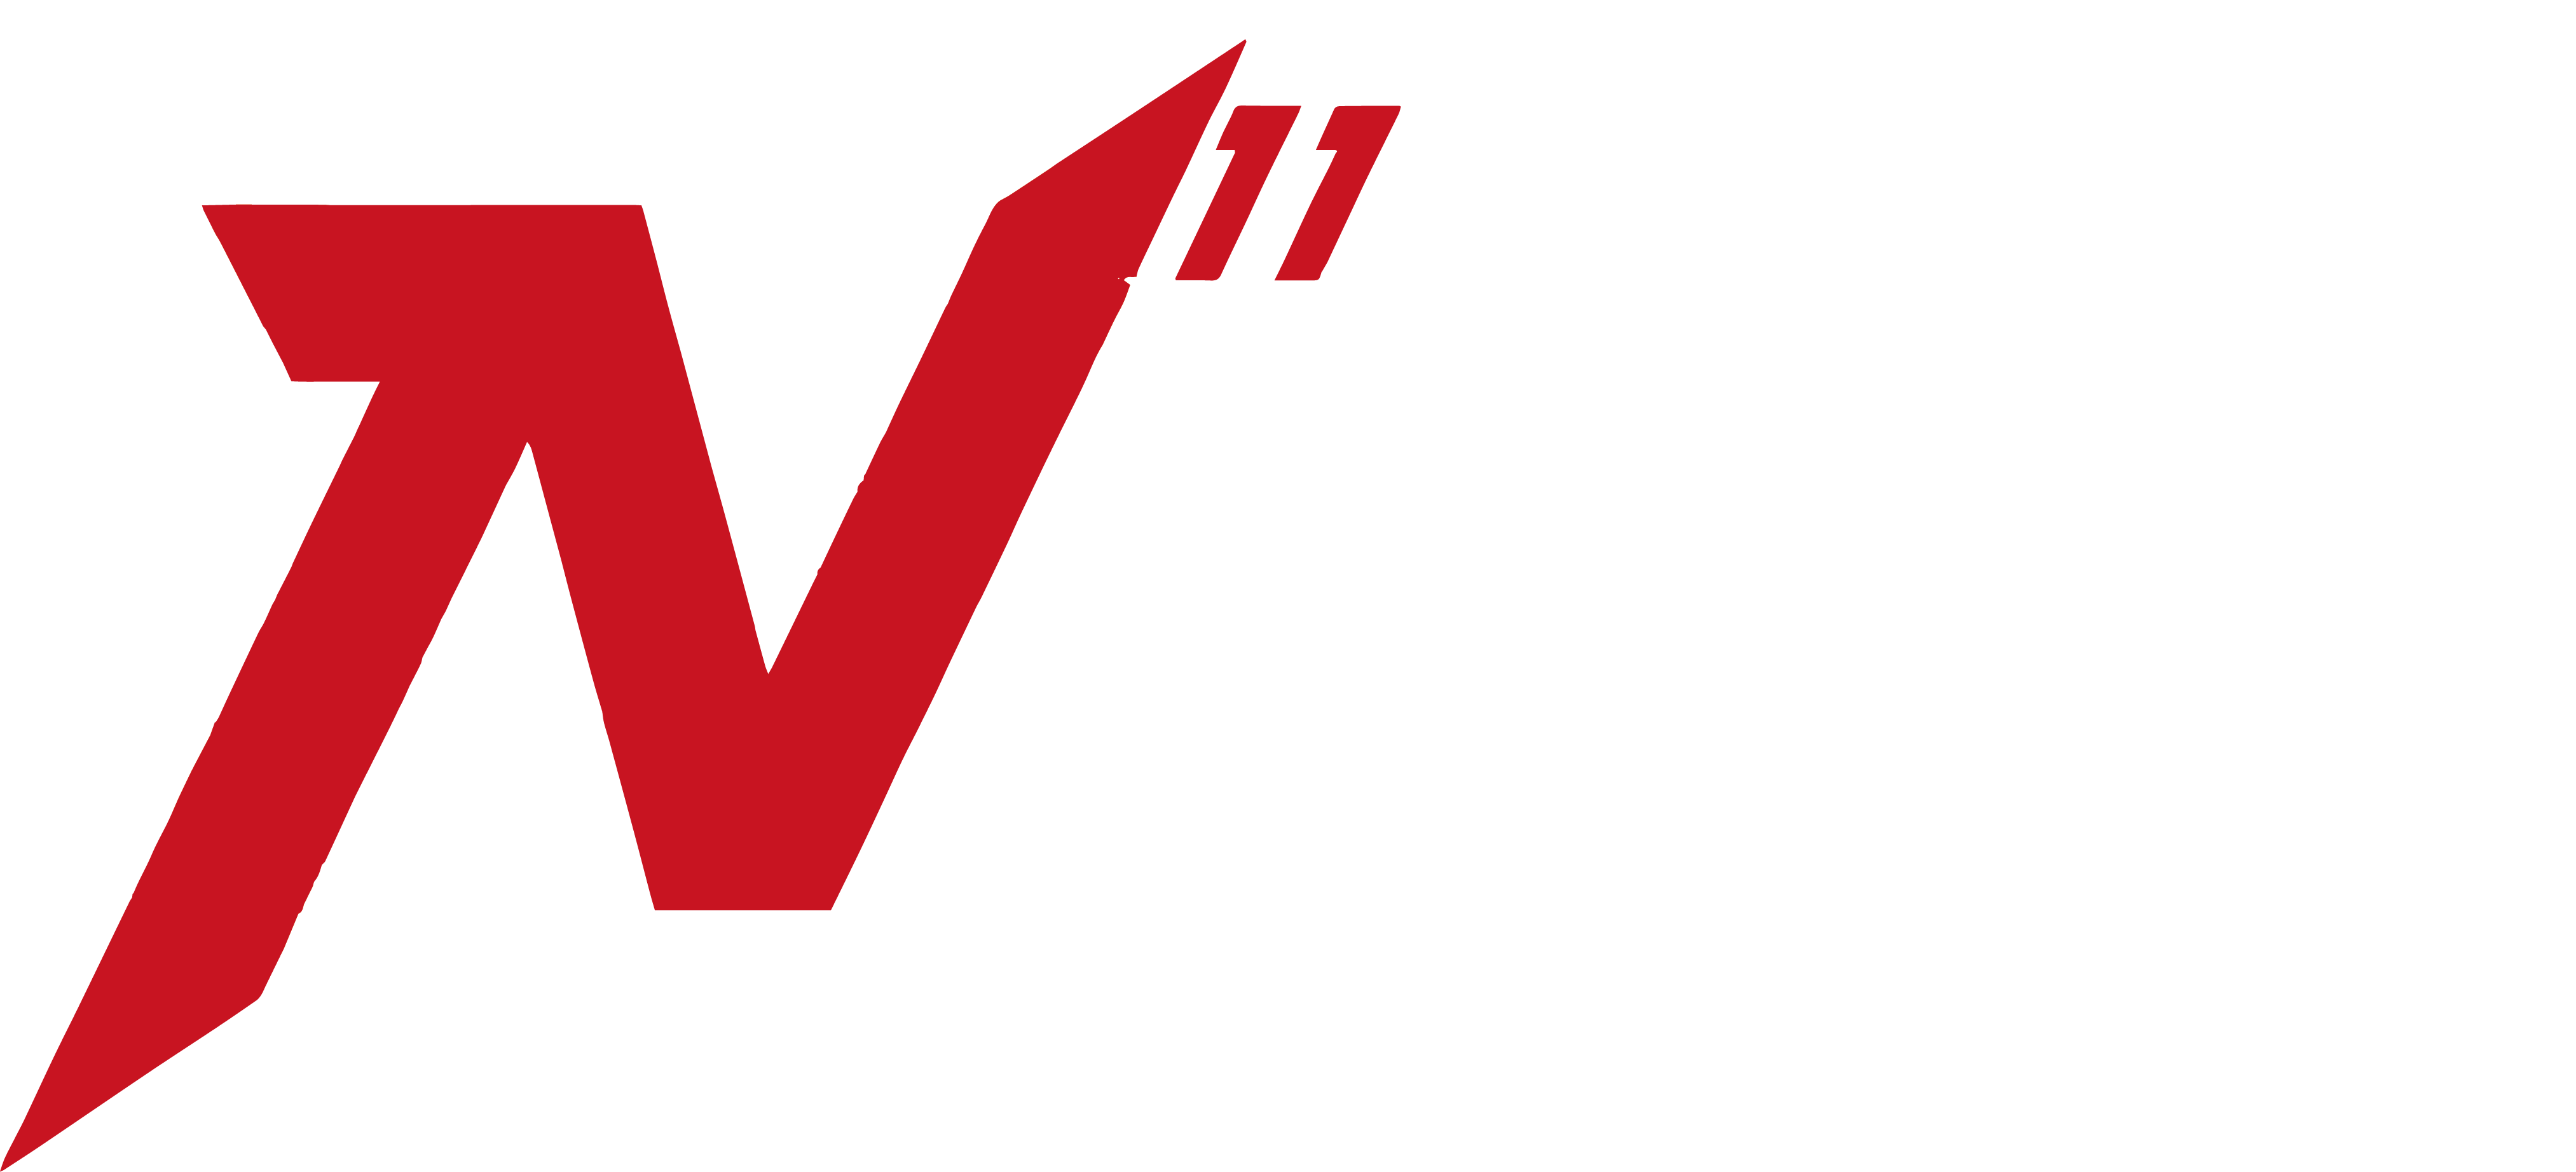 N11 Wrocławskie Centrum Sportu logo